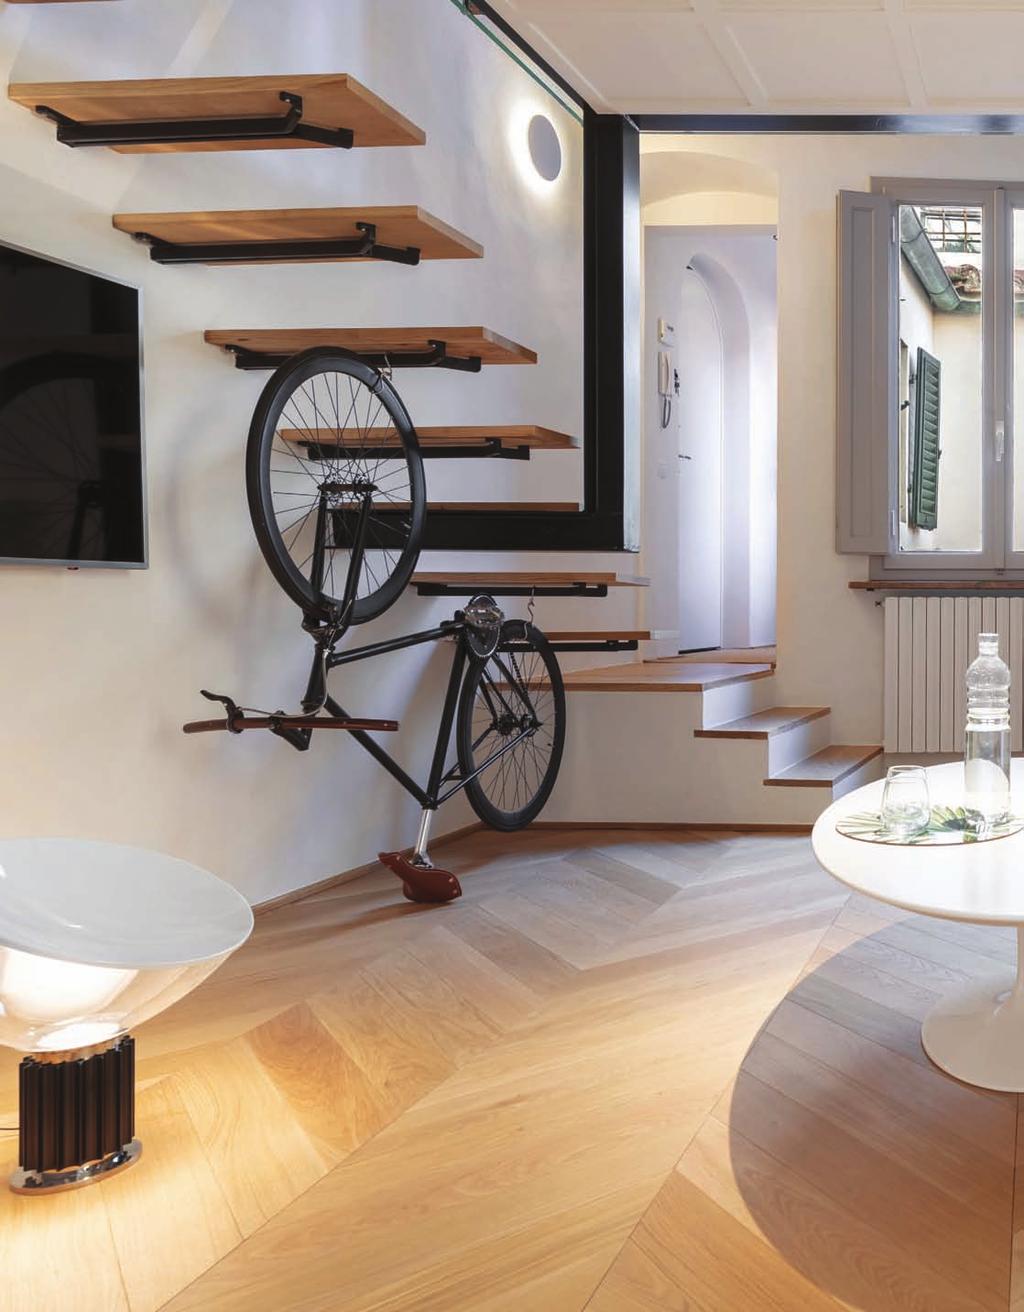 o nº7 O atelier de arquitetura Studio Pierattelli interviu num pequeno apartamento de 50m 2, no centro de